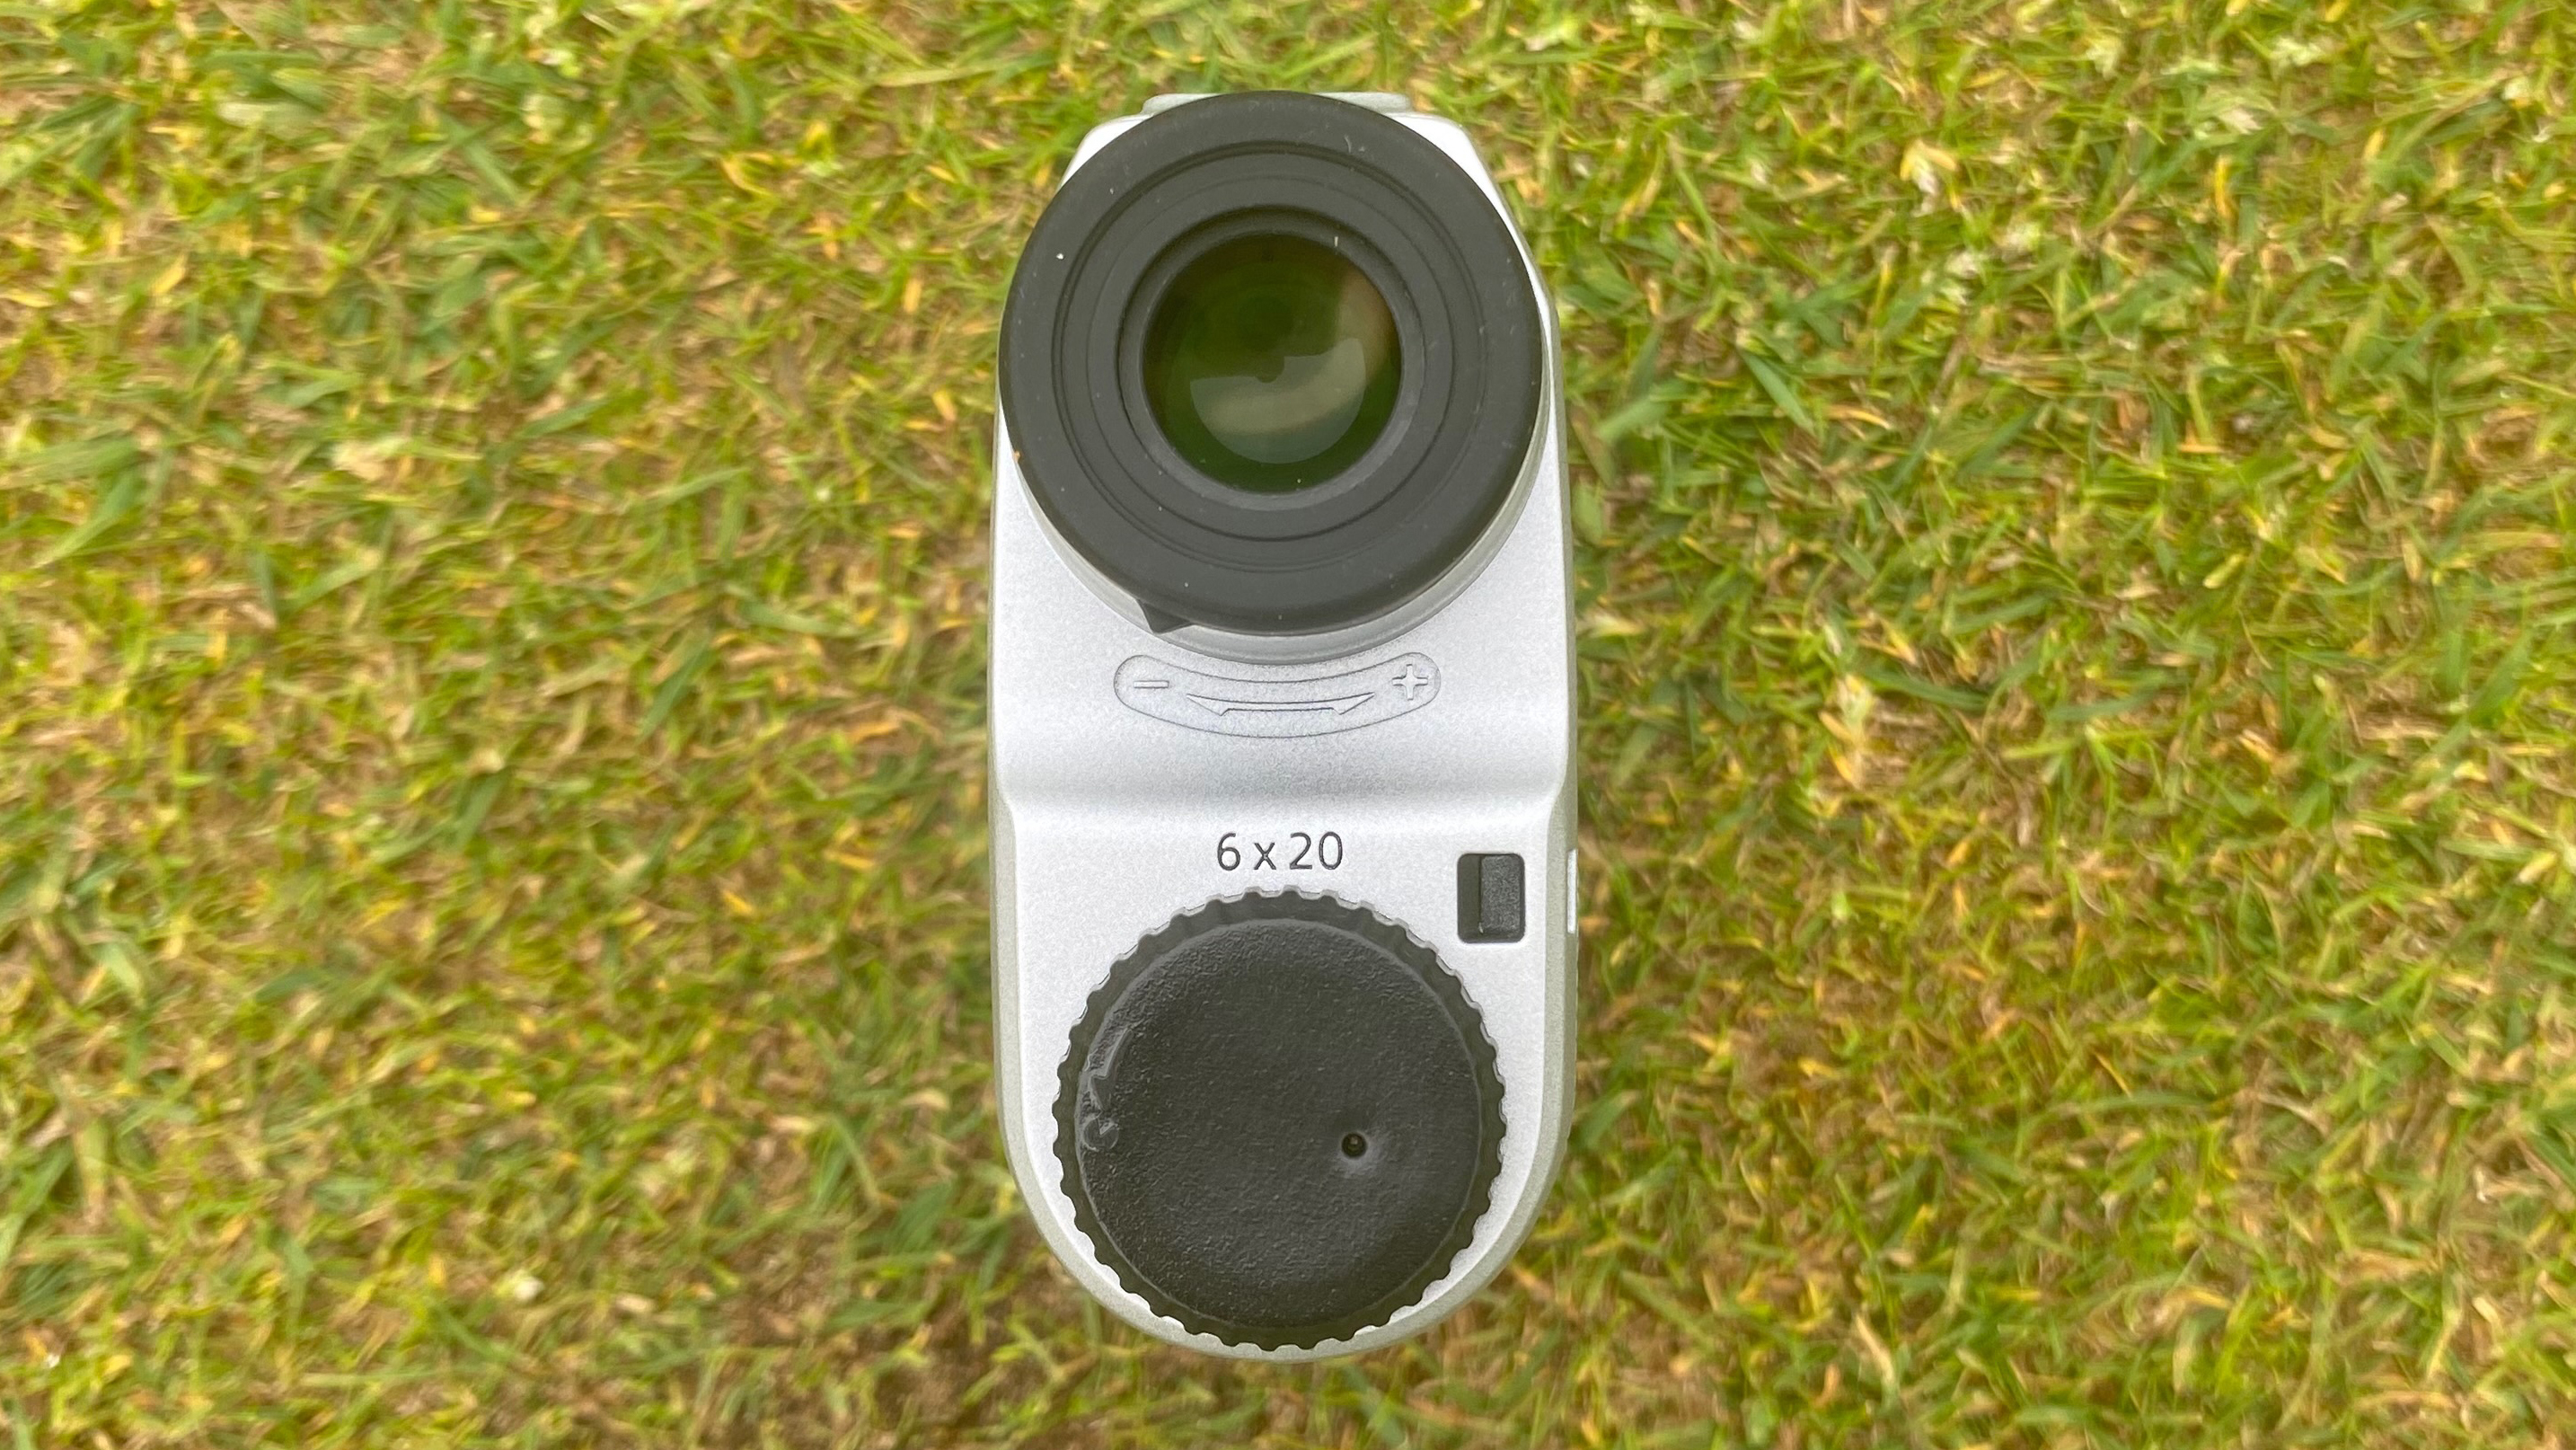 Nikon Coolshot 20i GIII Rangefinder